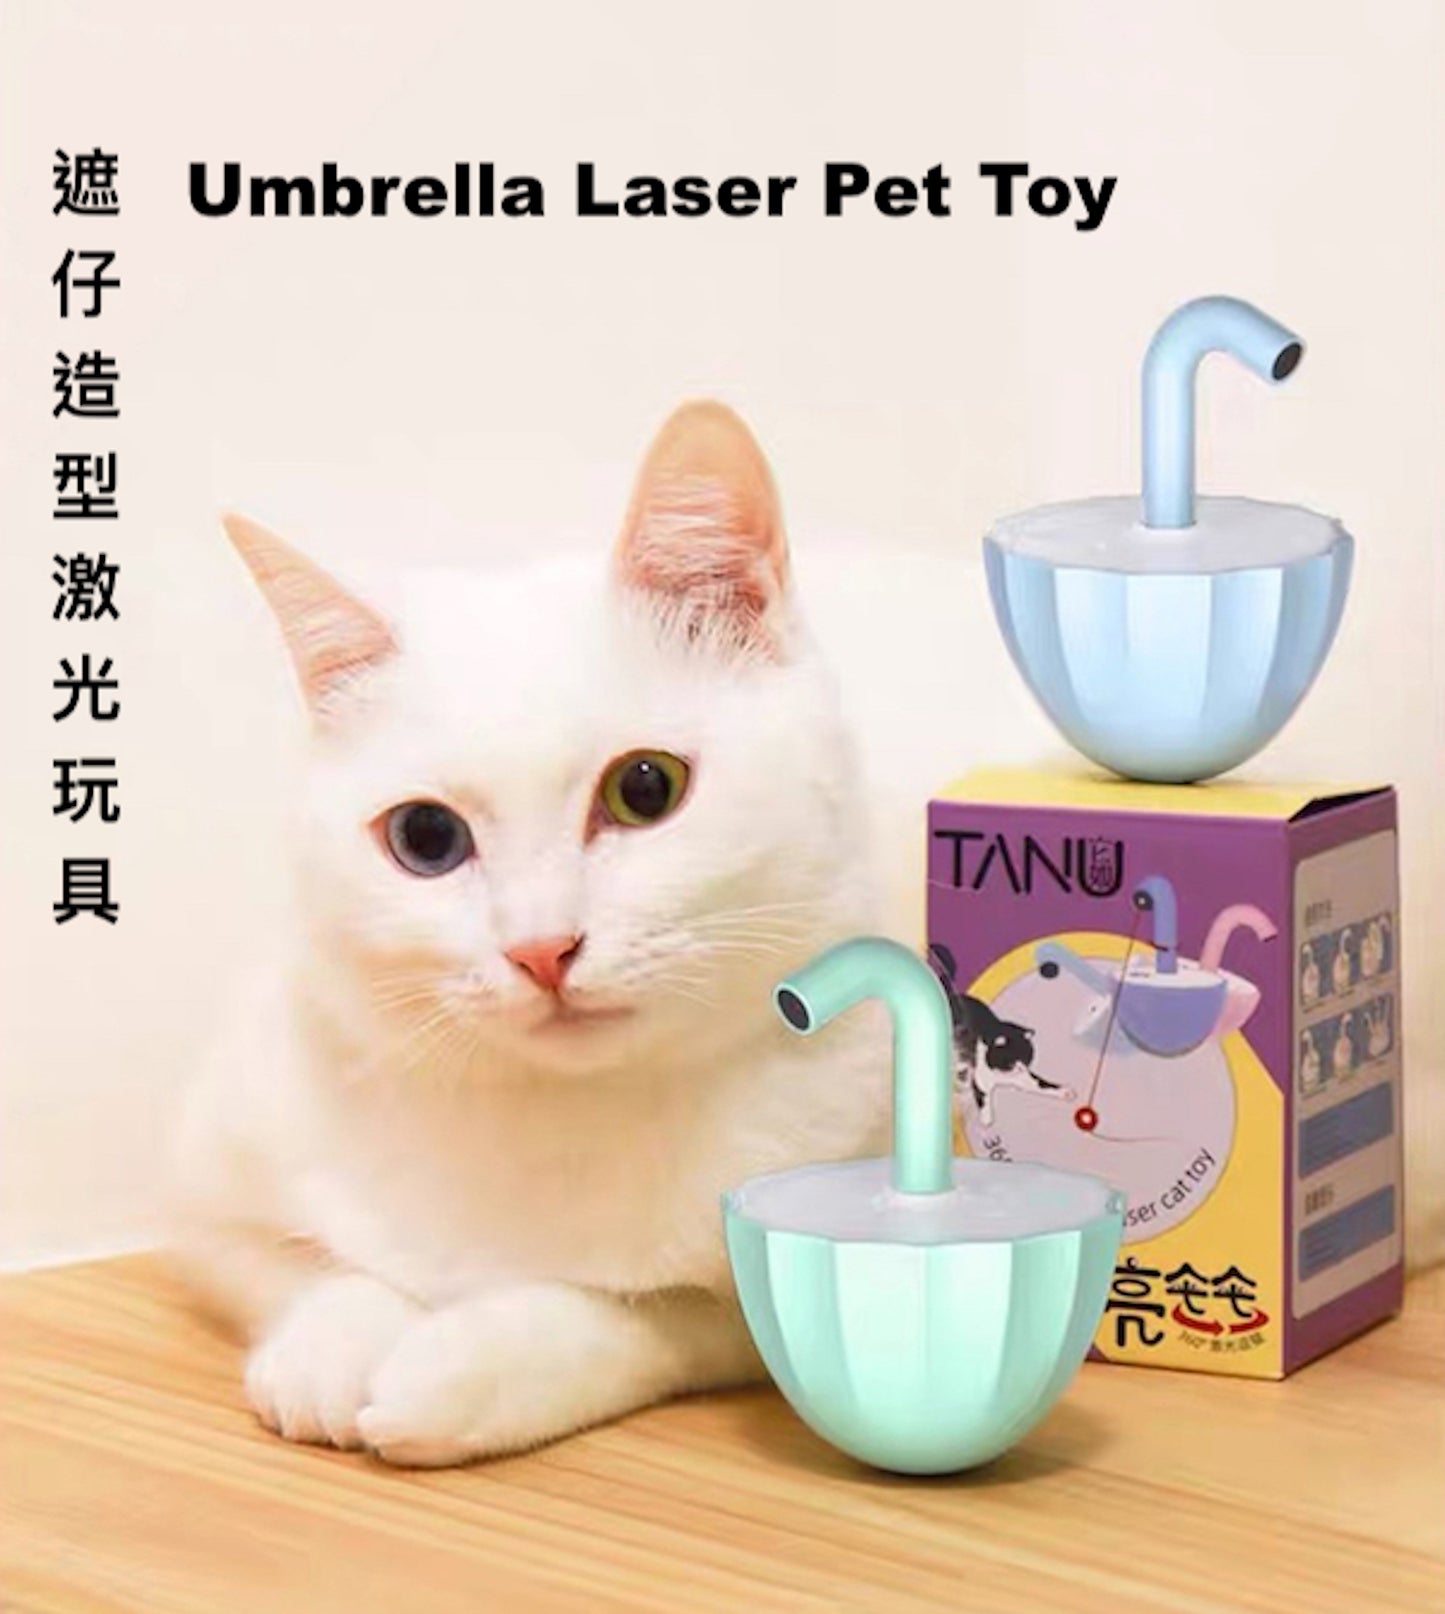 Umbrella Laser Pet Toy